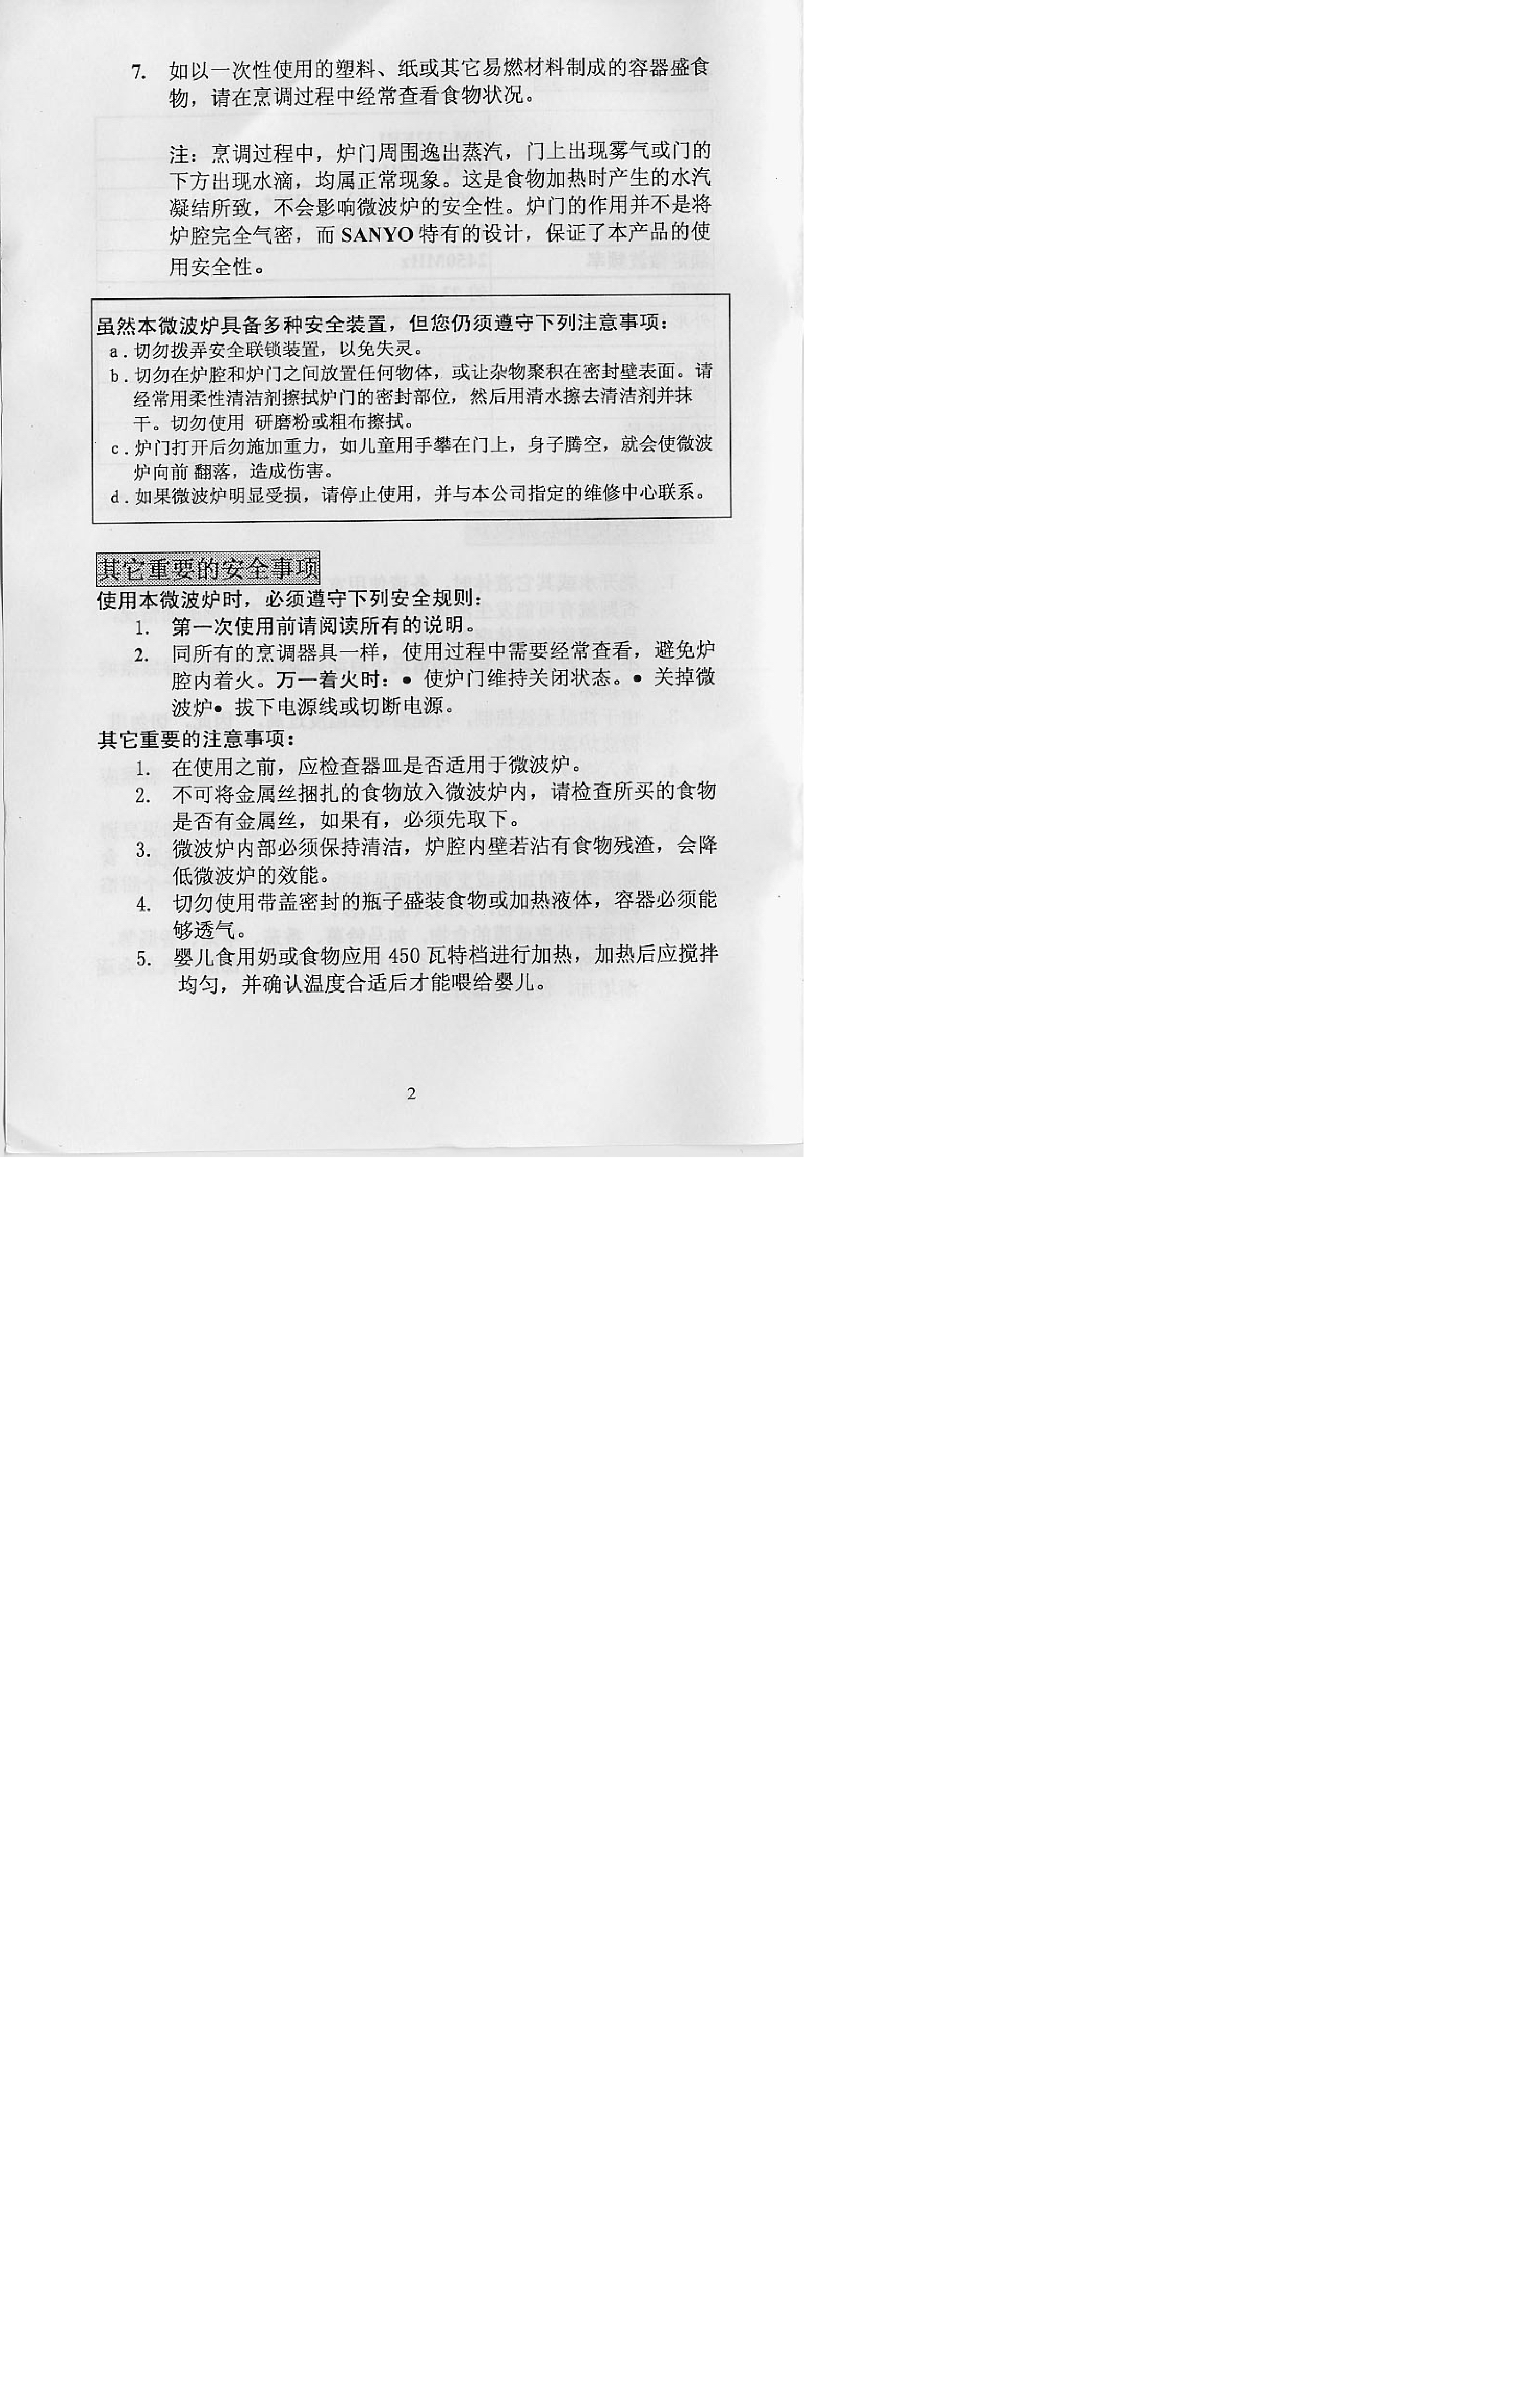 三洋 Sanyo EM-232EB1 说明书 第2页